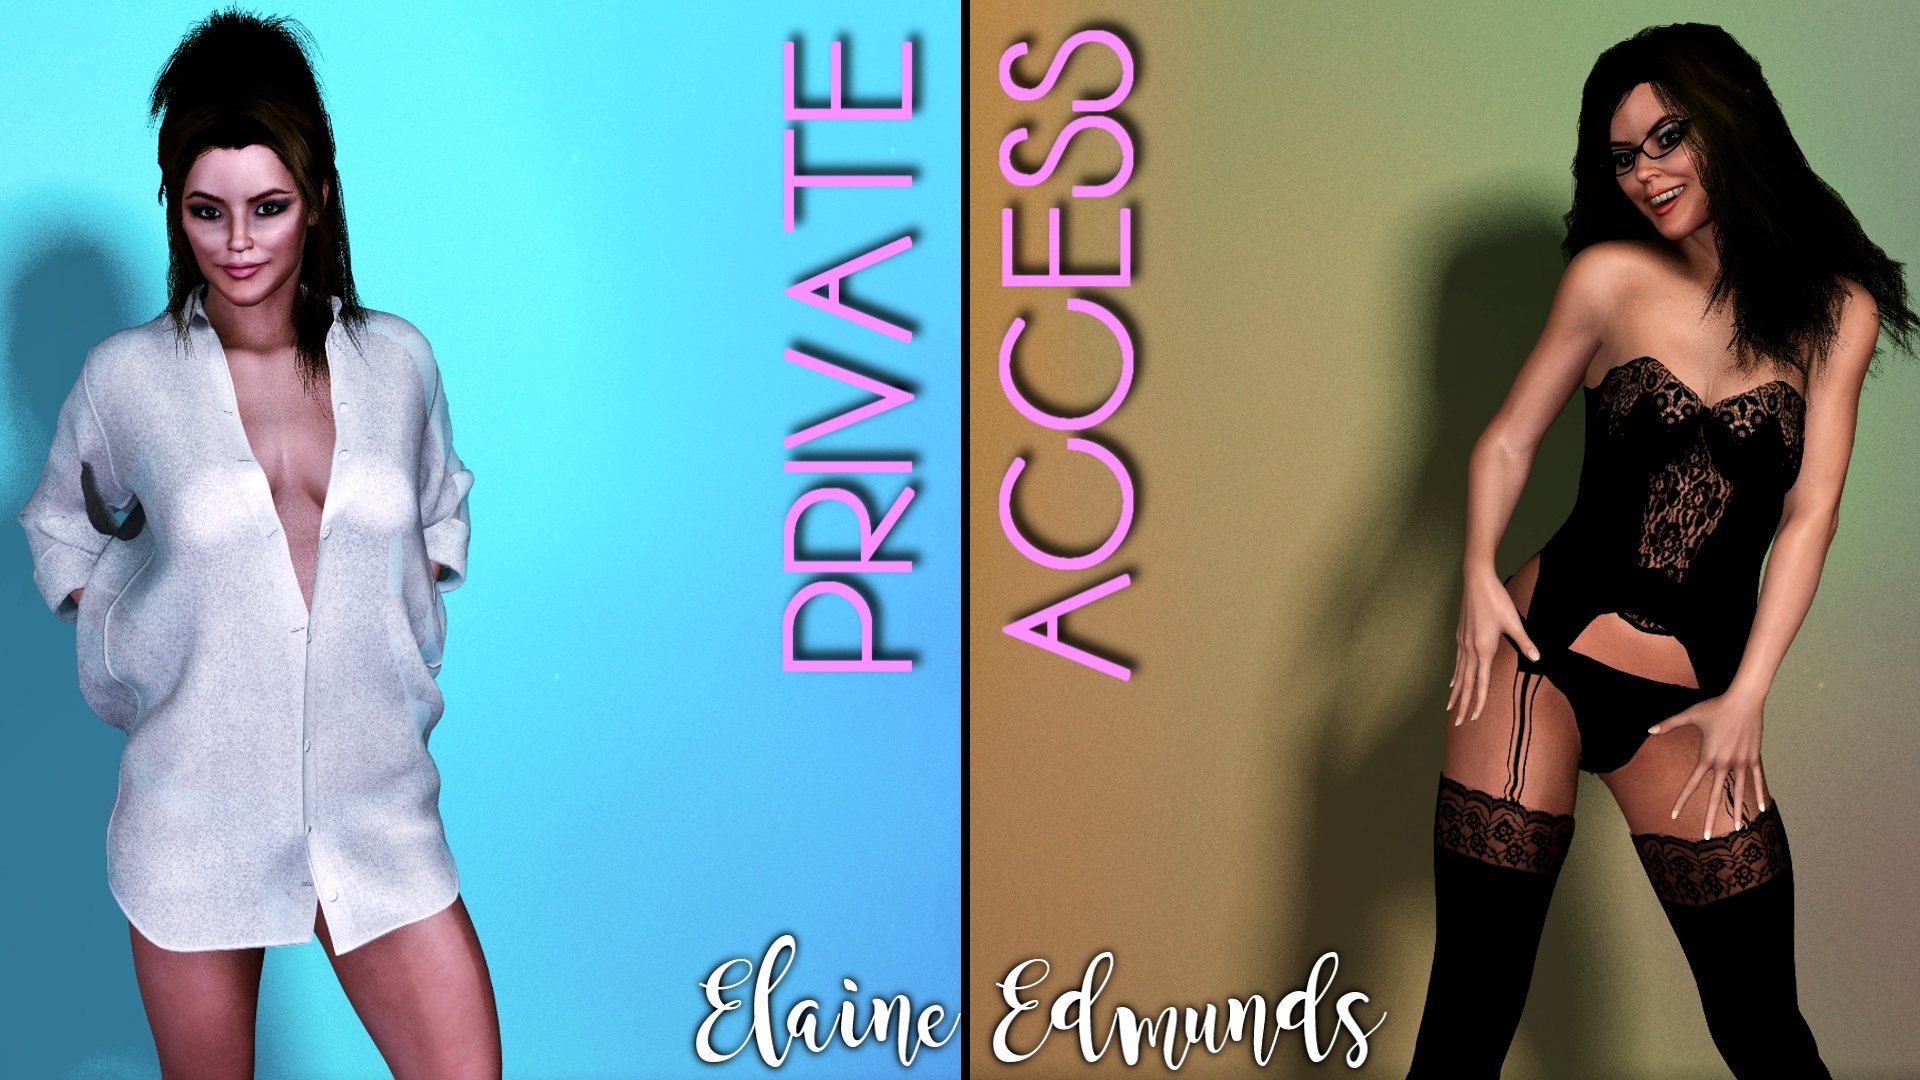 Private Access Promo Pic 3 of 7